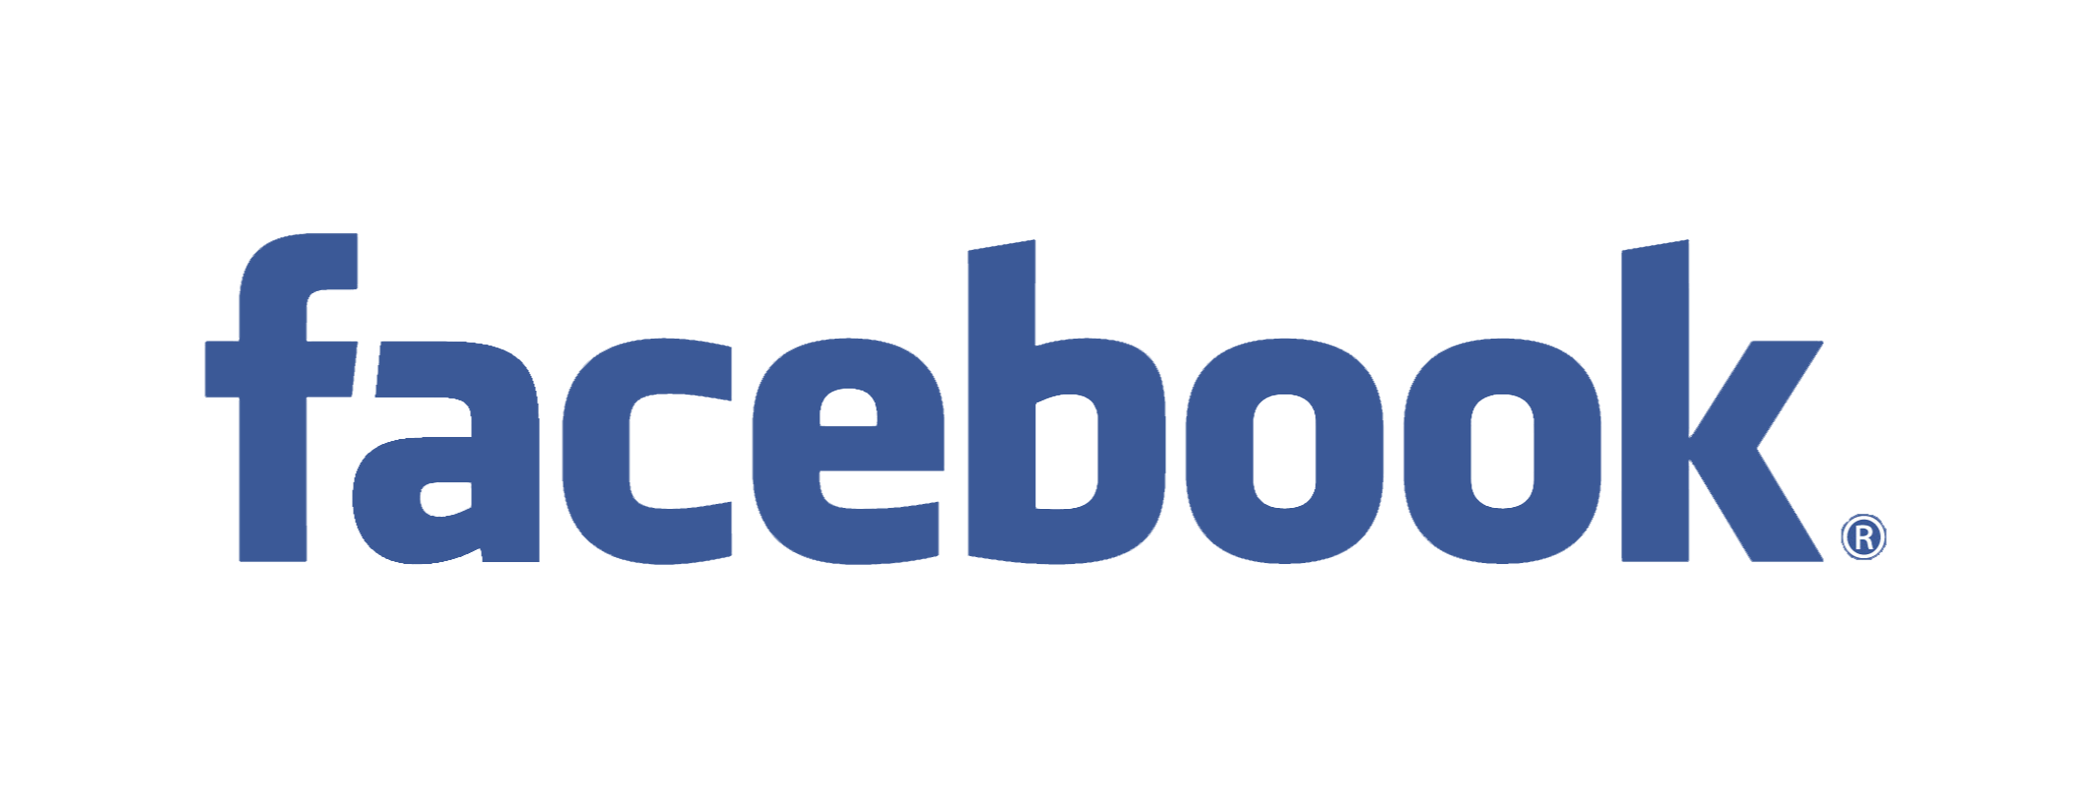 logo-facebook-2